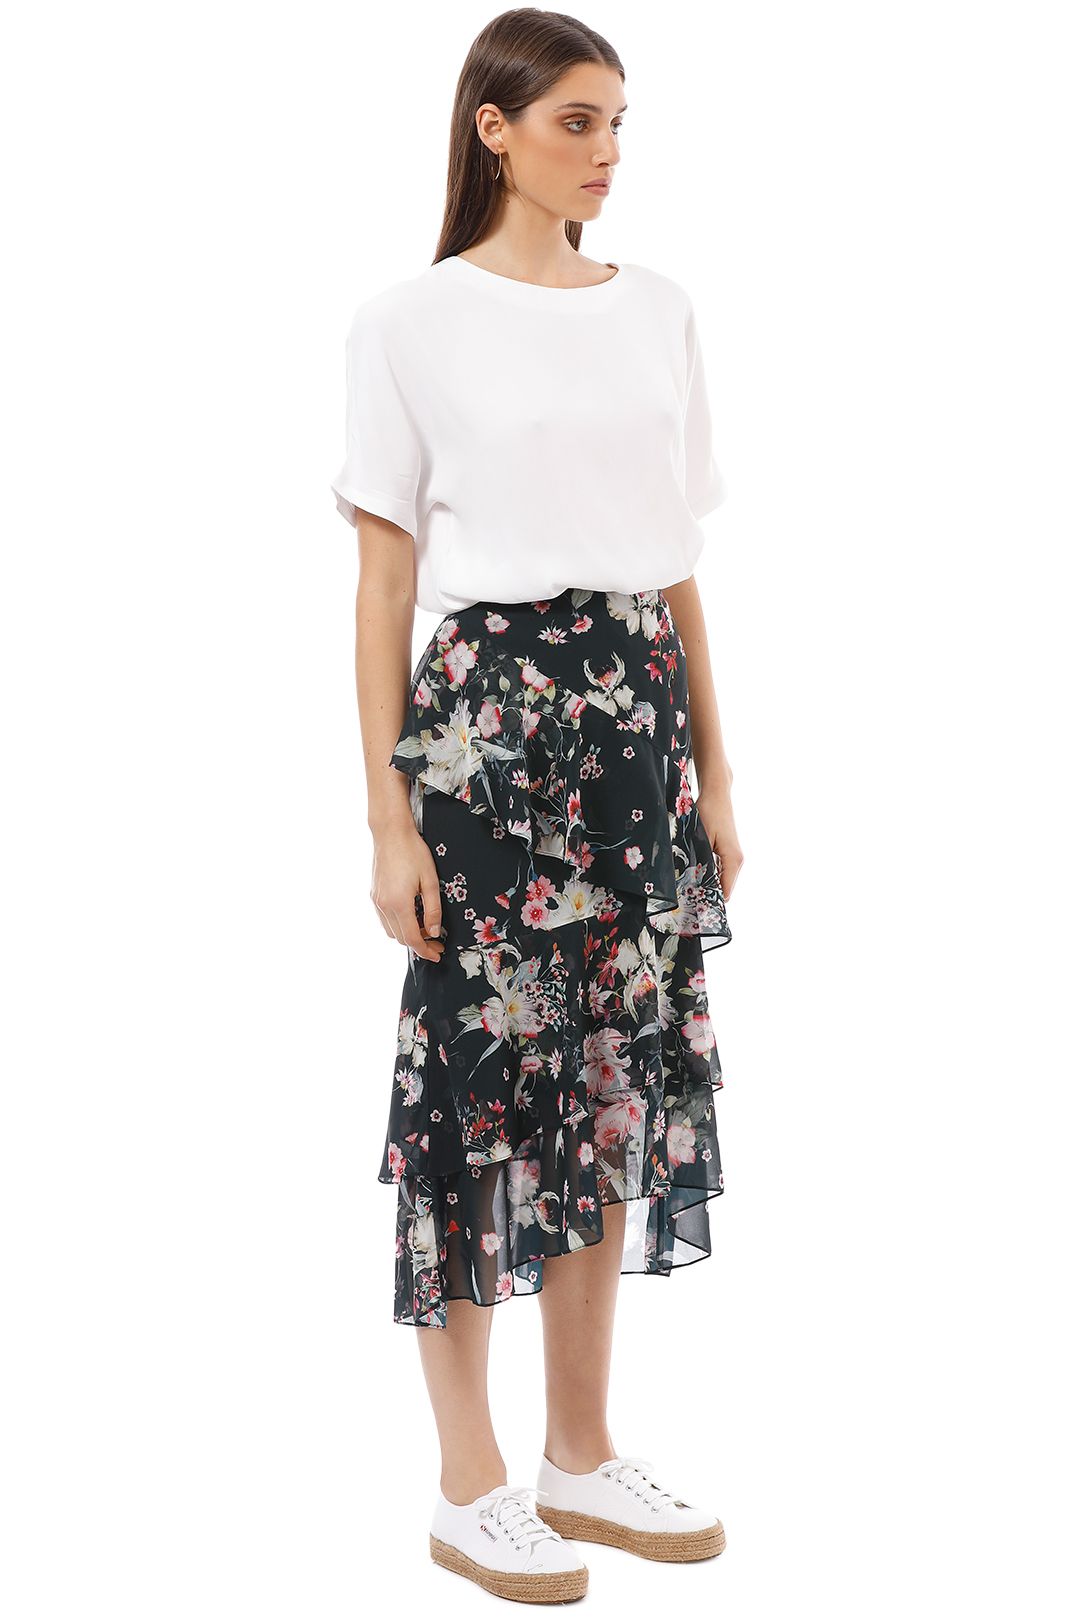 Cooper St - Titania Skirt - Multi - Side